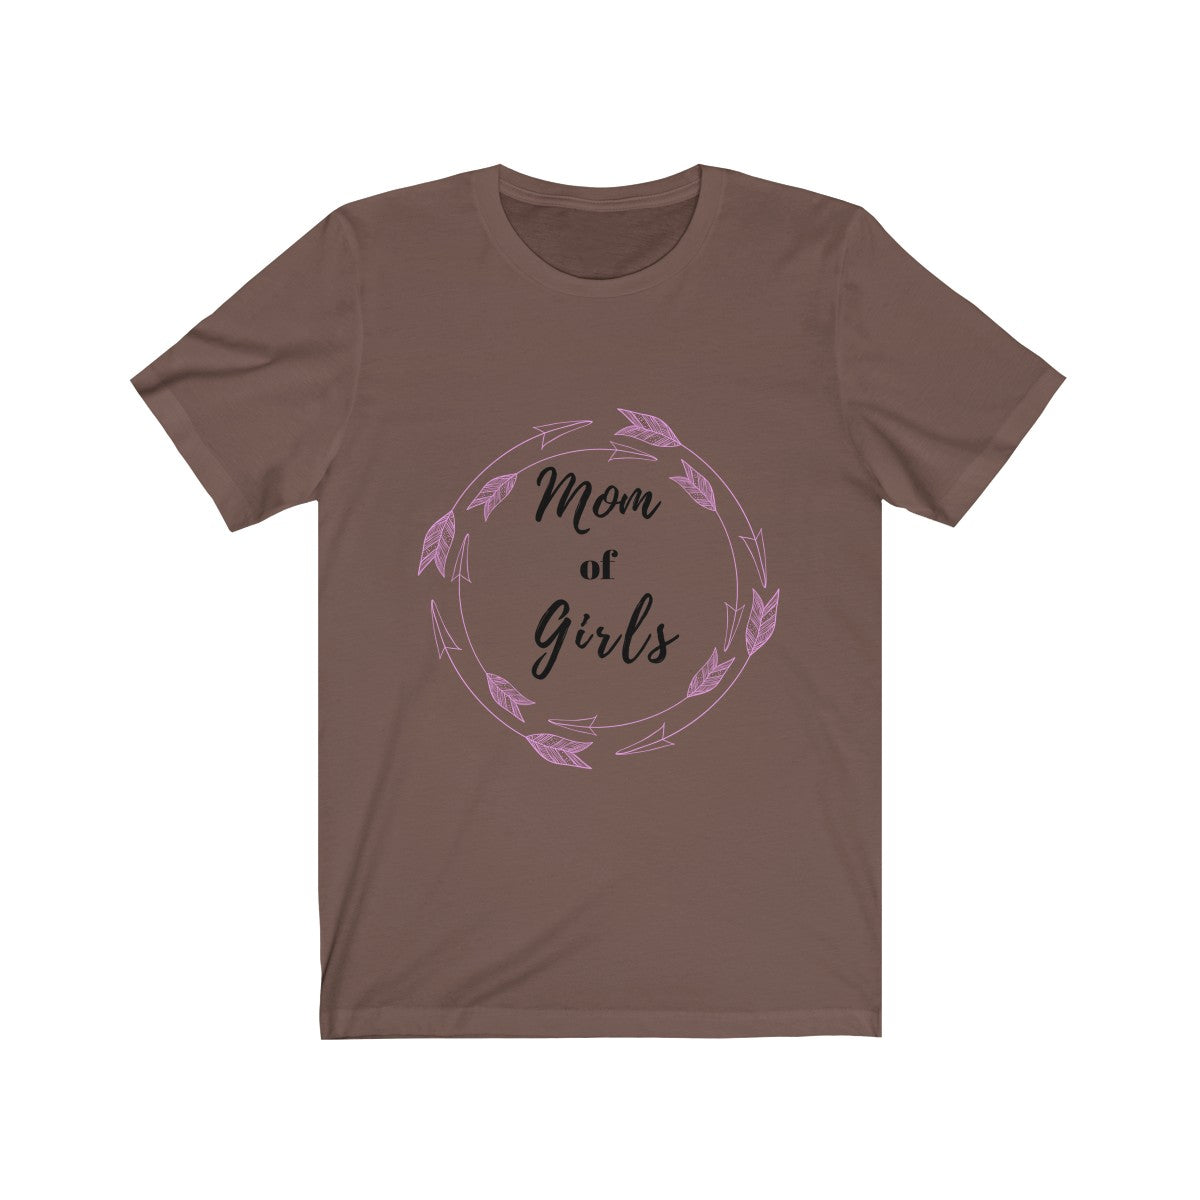 Mom of Girls Tee| Mom of Girls Tshirt| Mom Tshirt